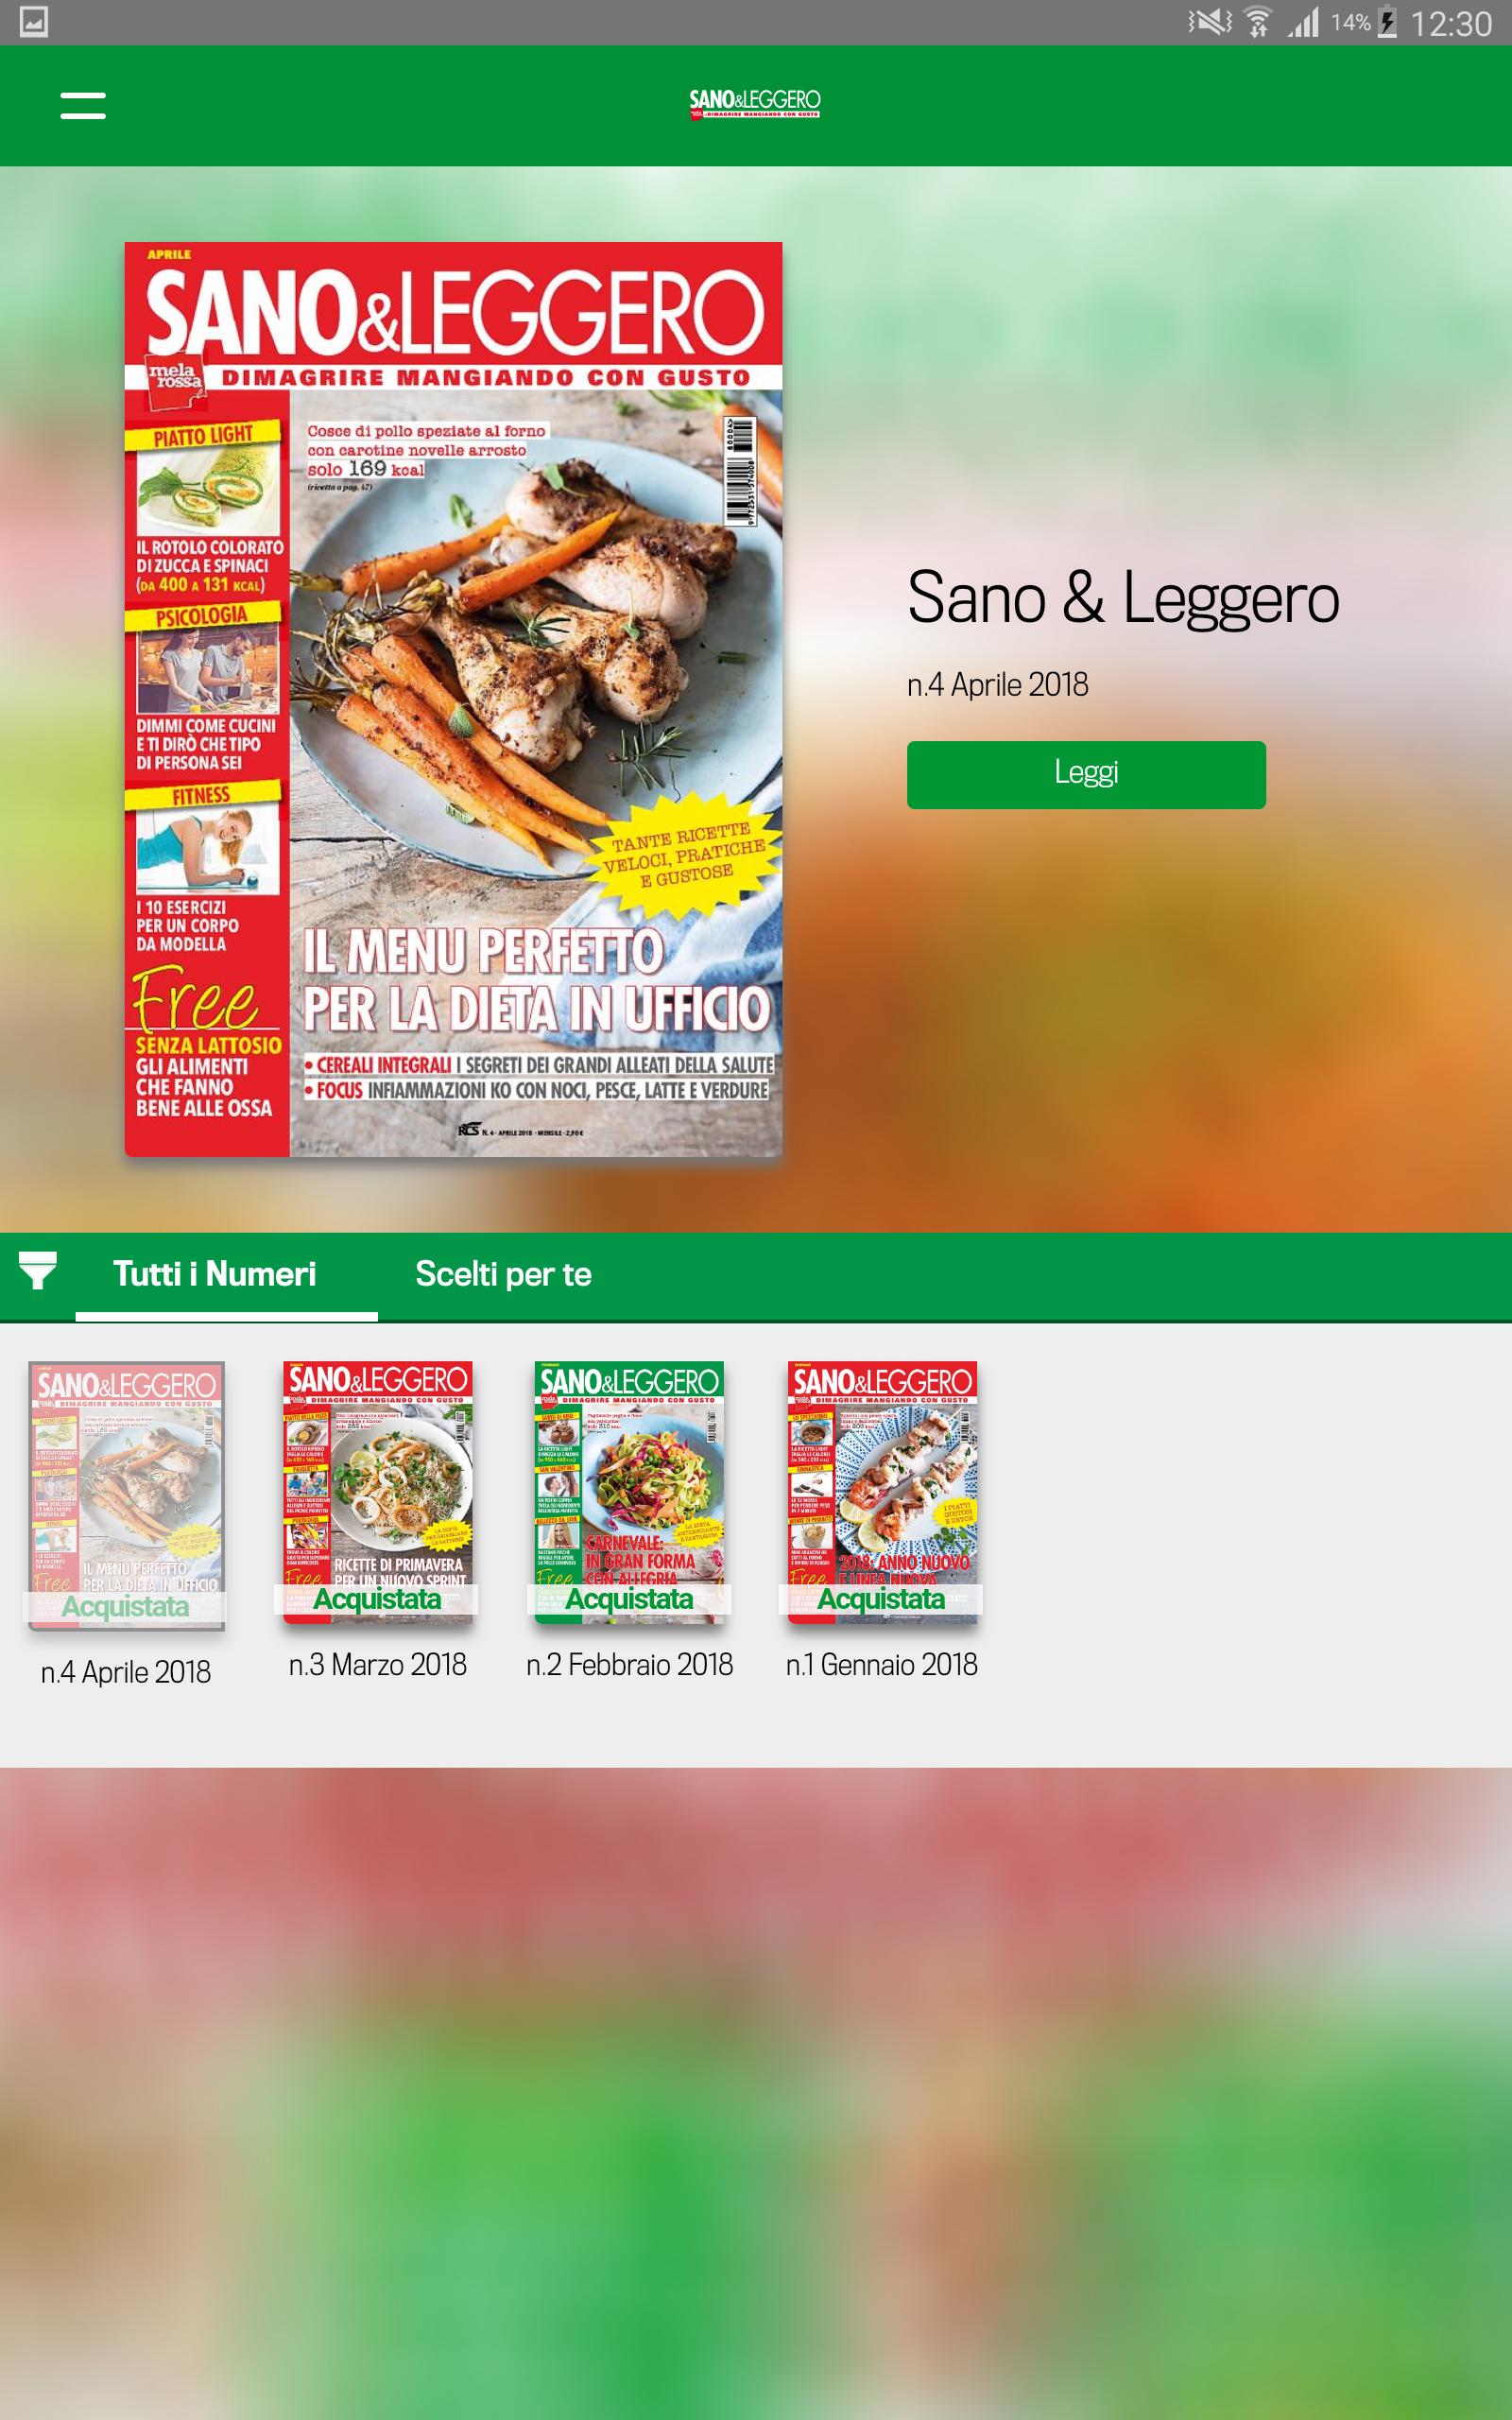 Sano e Leggero for Android - APK Download